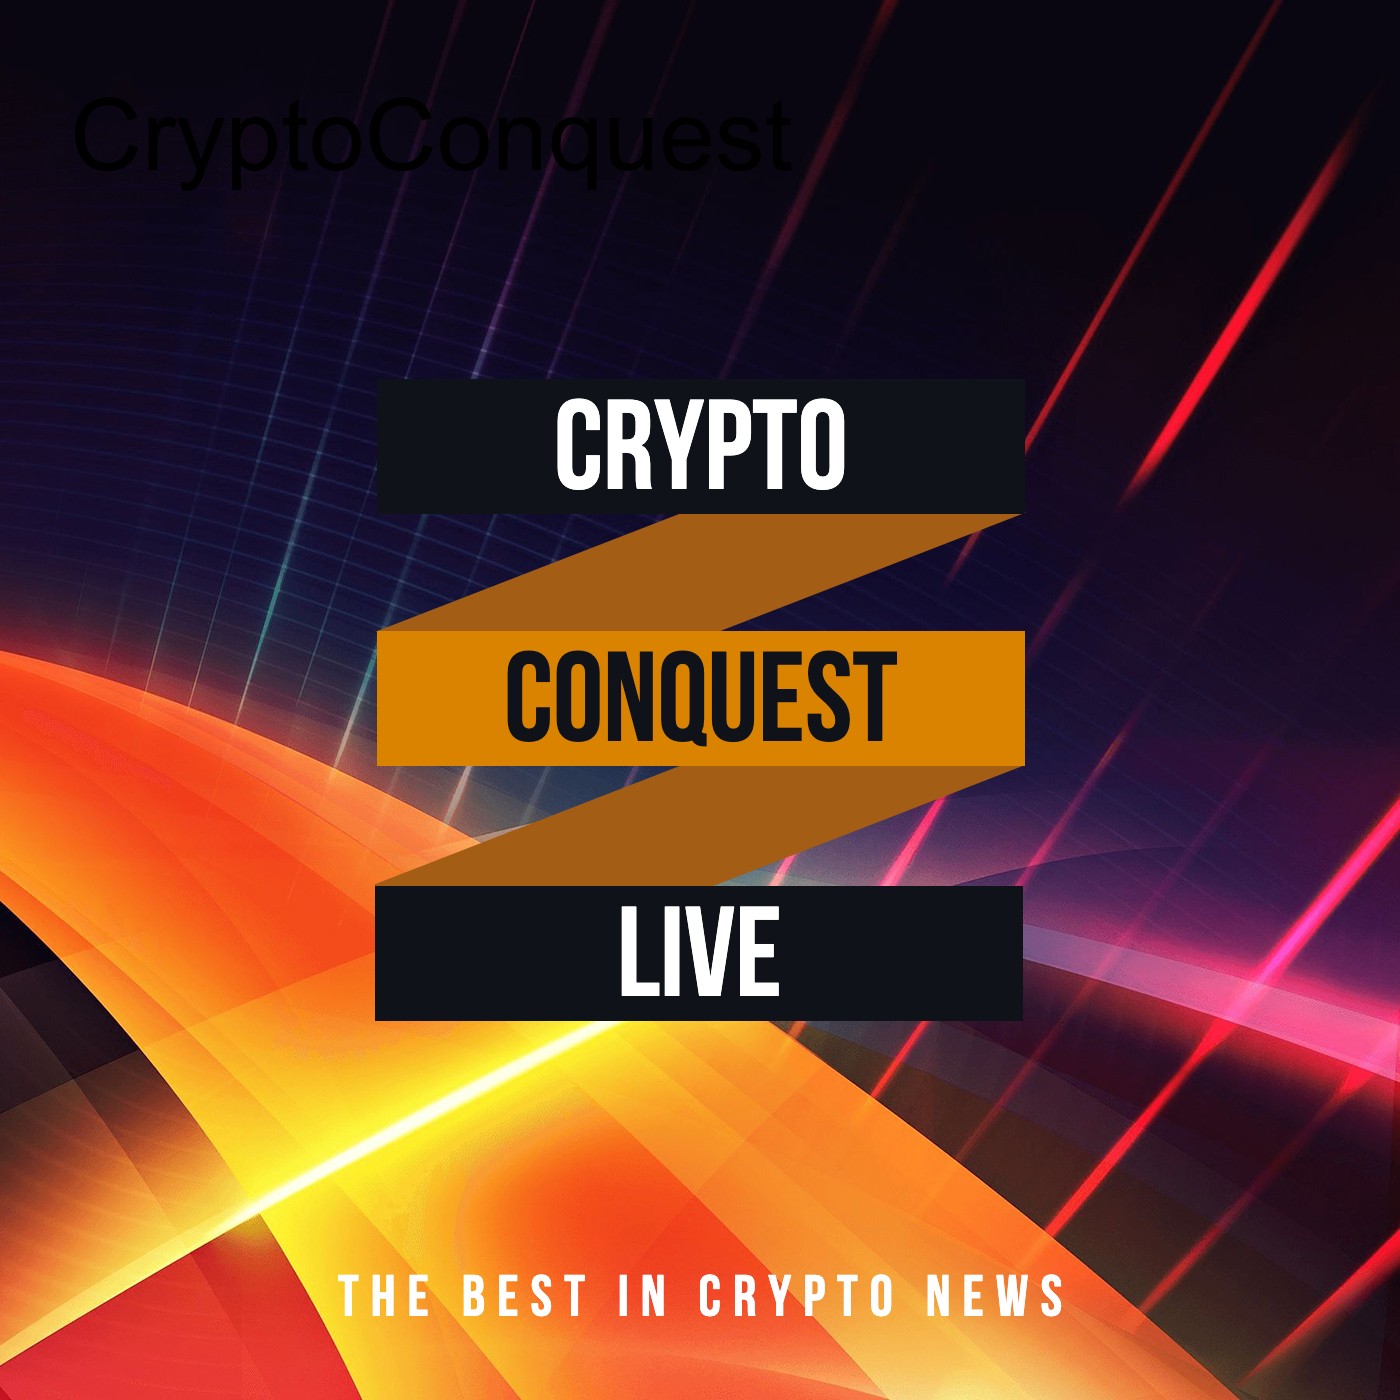 CryptoConquest